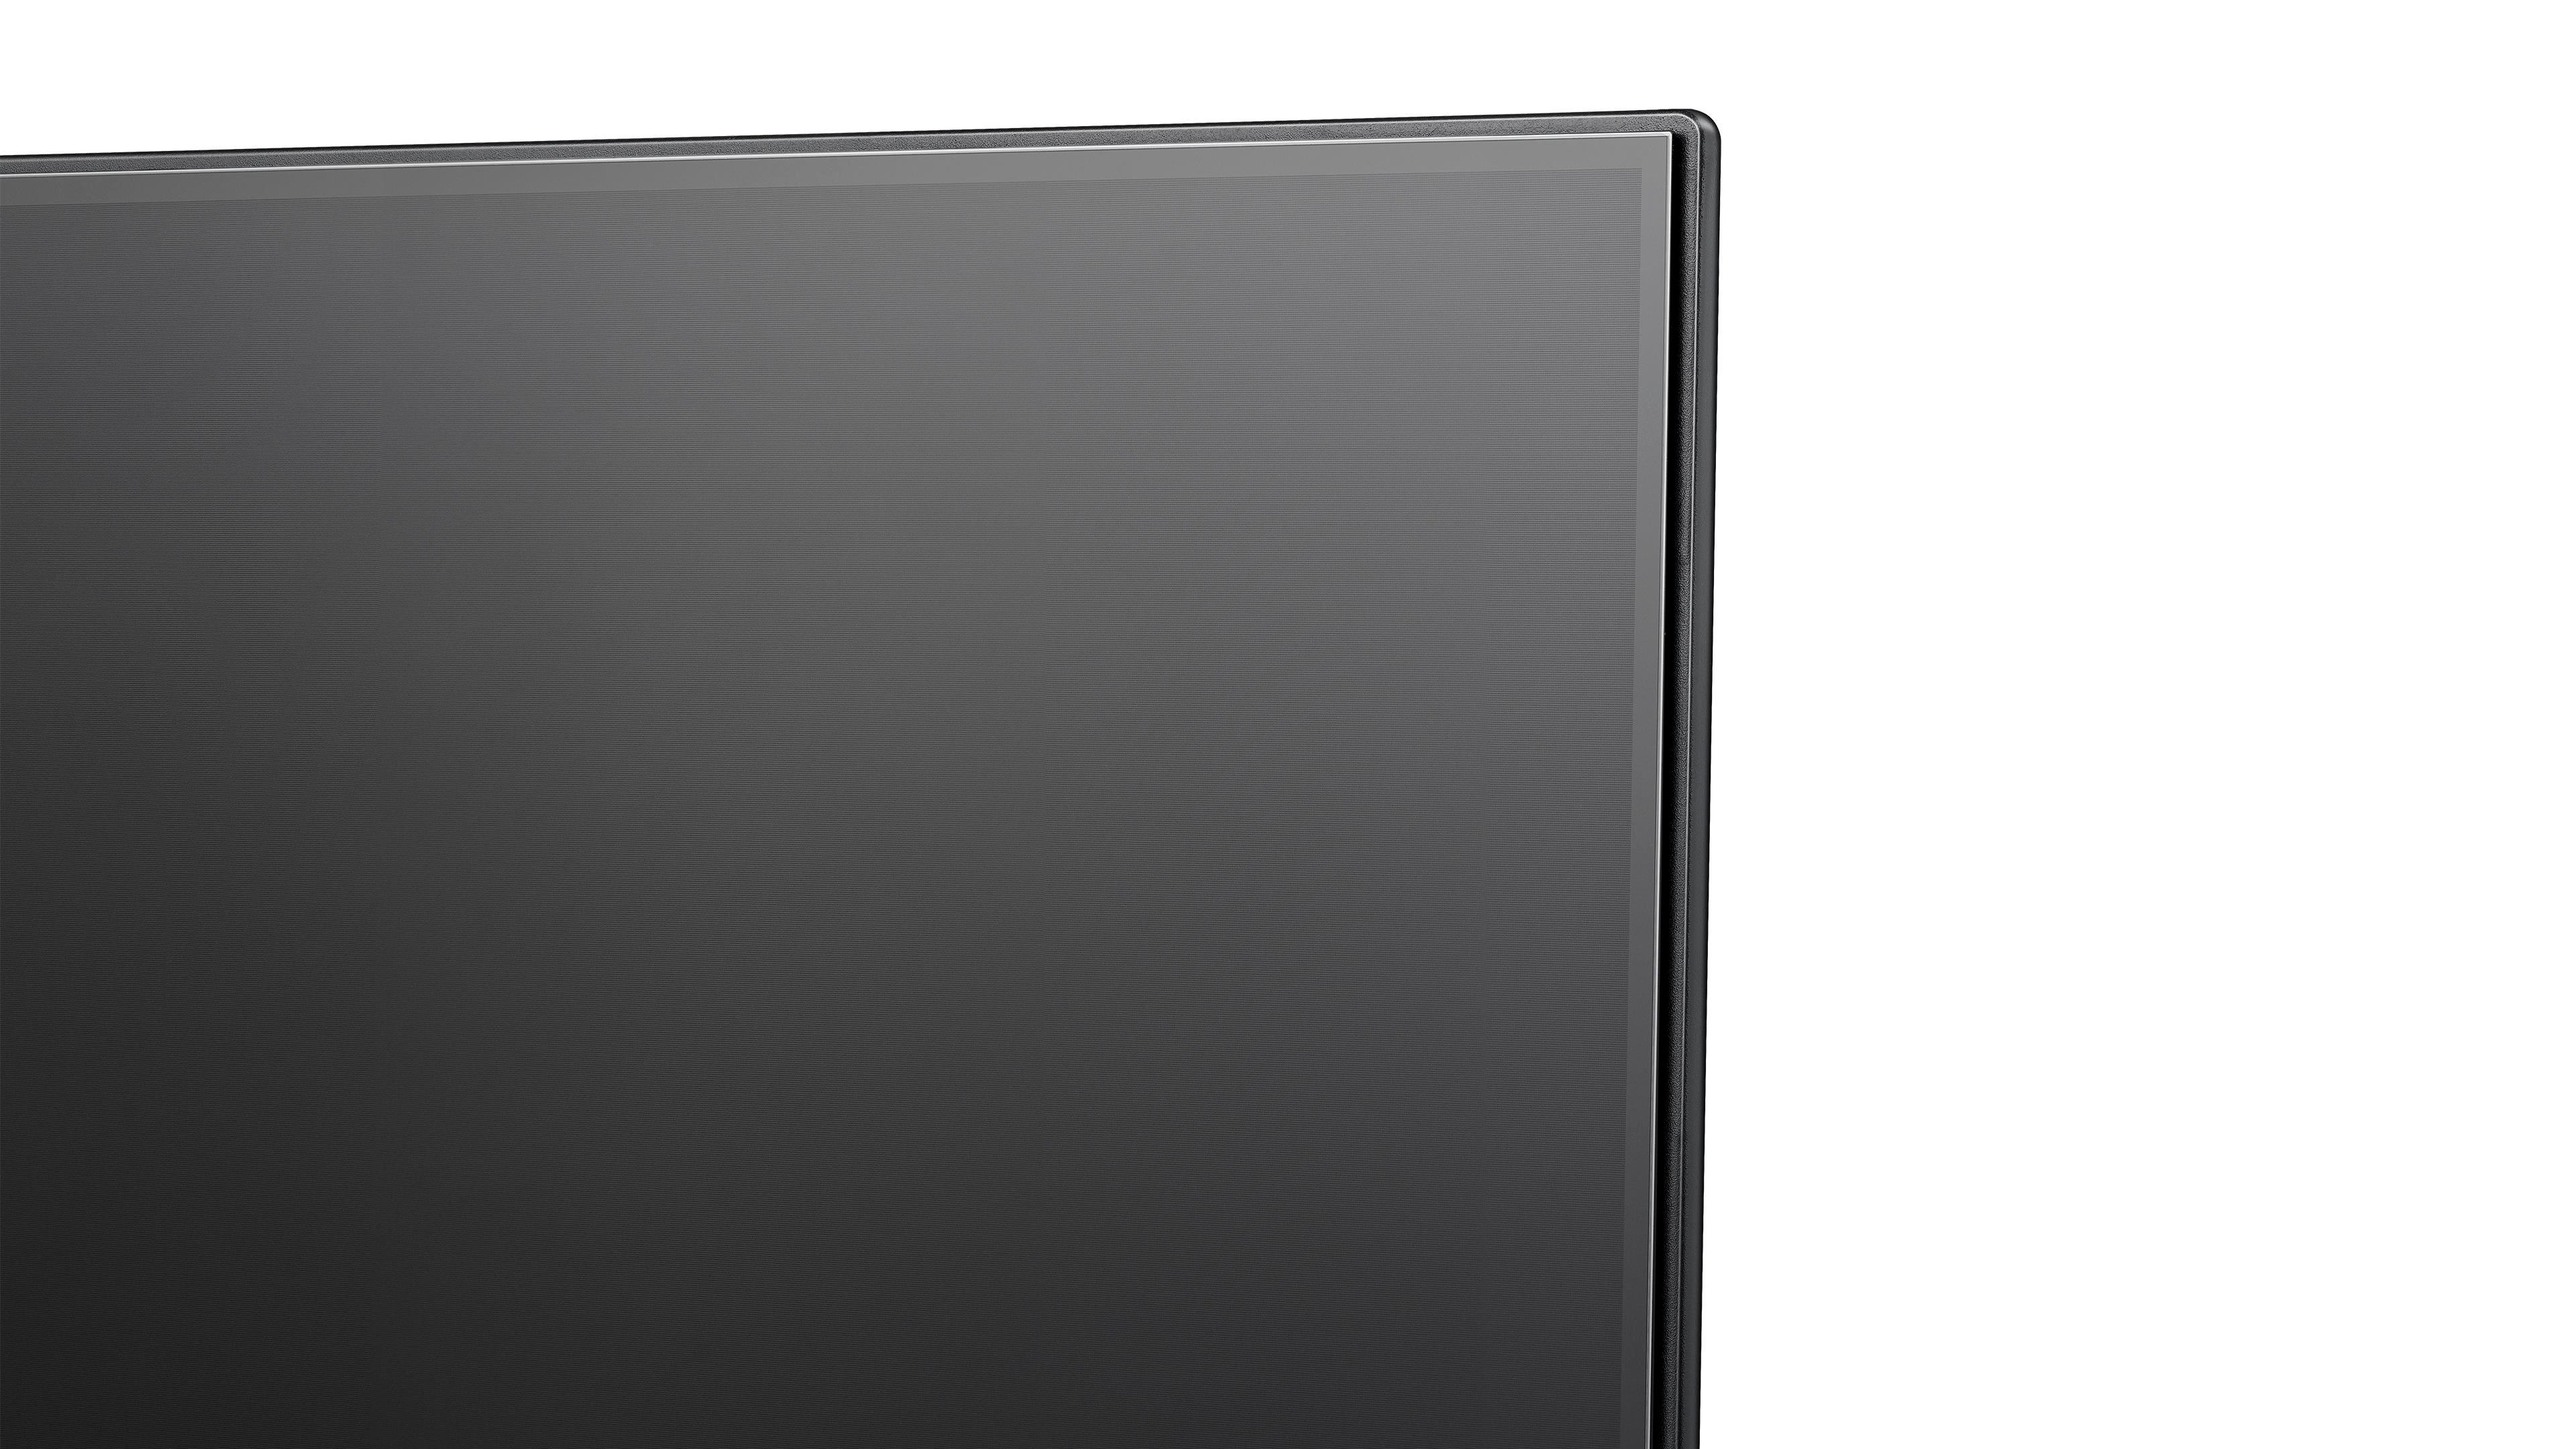 HISENSE 75A6K LED (Flat, 189 75 cm, TV, 4K, / UHD VIDAA) SMART TV Zoll